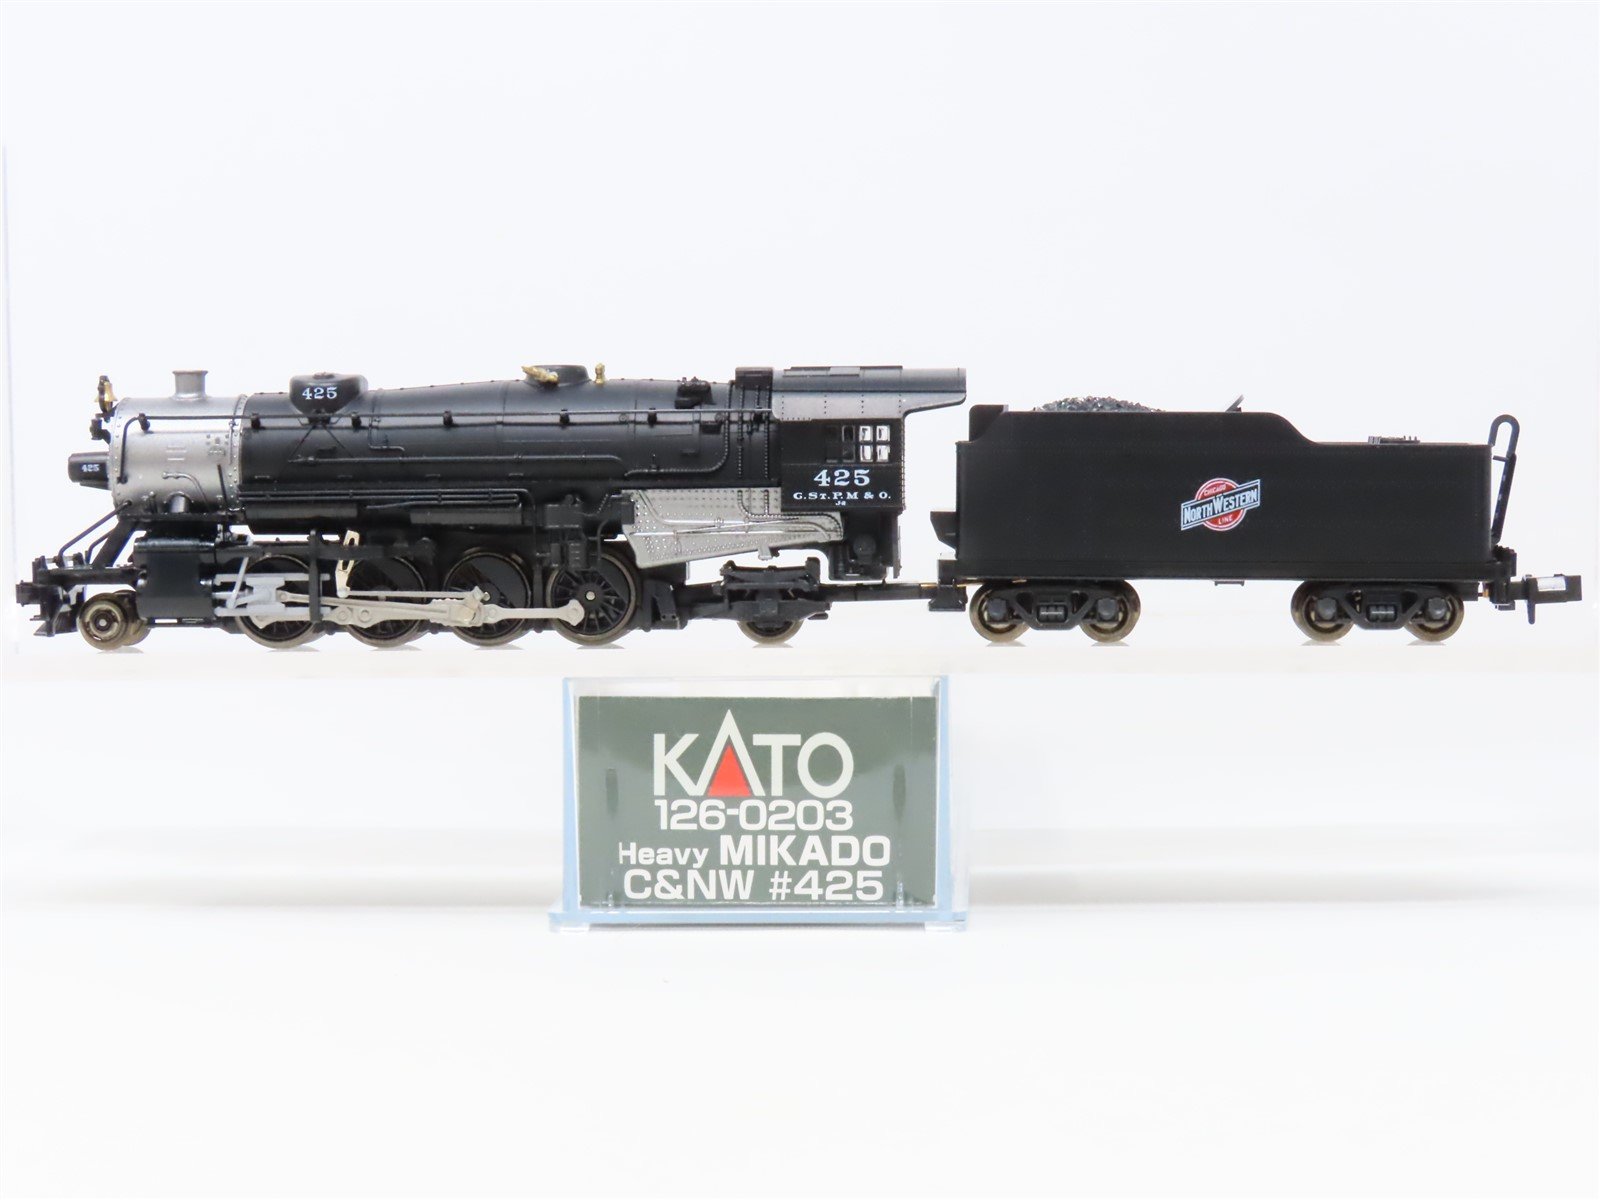 N Scale KATO 126-0203 C&NW Chicago & Northwestern 2-8-2 Steam Locomotive #425